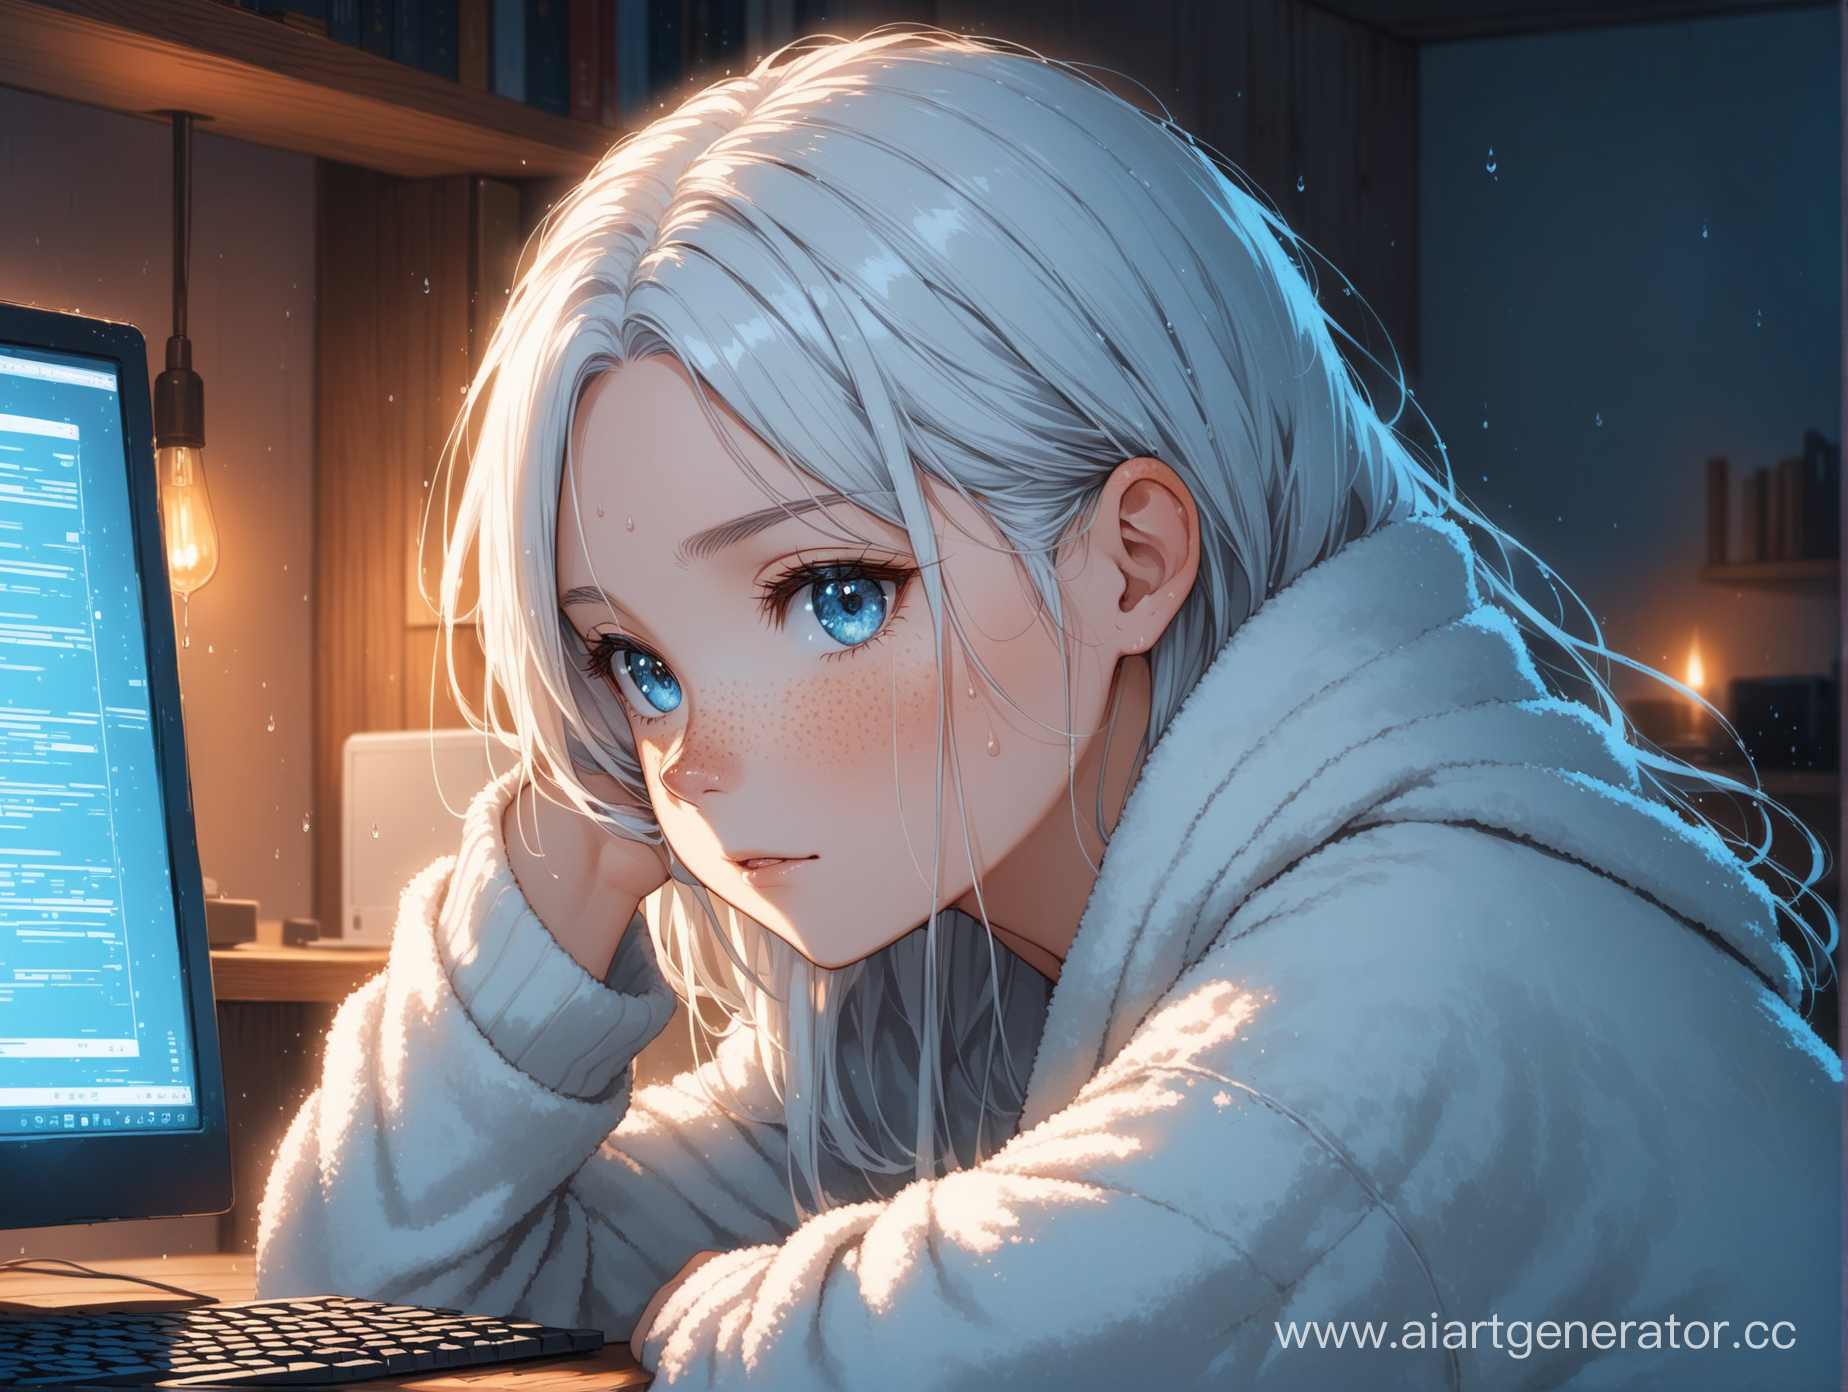 девушка играющая в компьютер с белыми влажными волосами до плеч немного веснушек, с холодными синими глазами в уютной атмосфере будто во сне